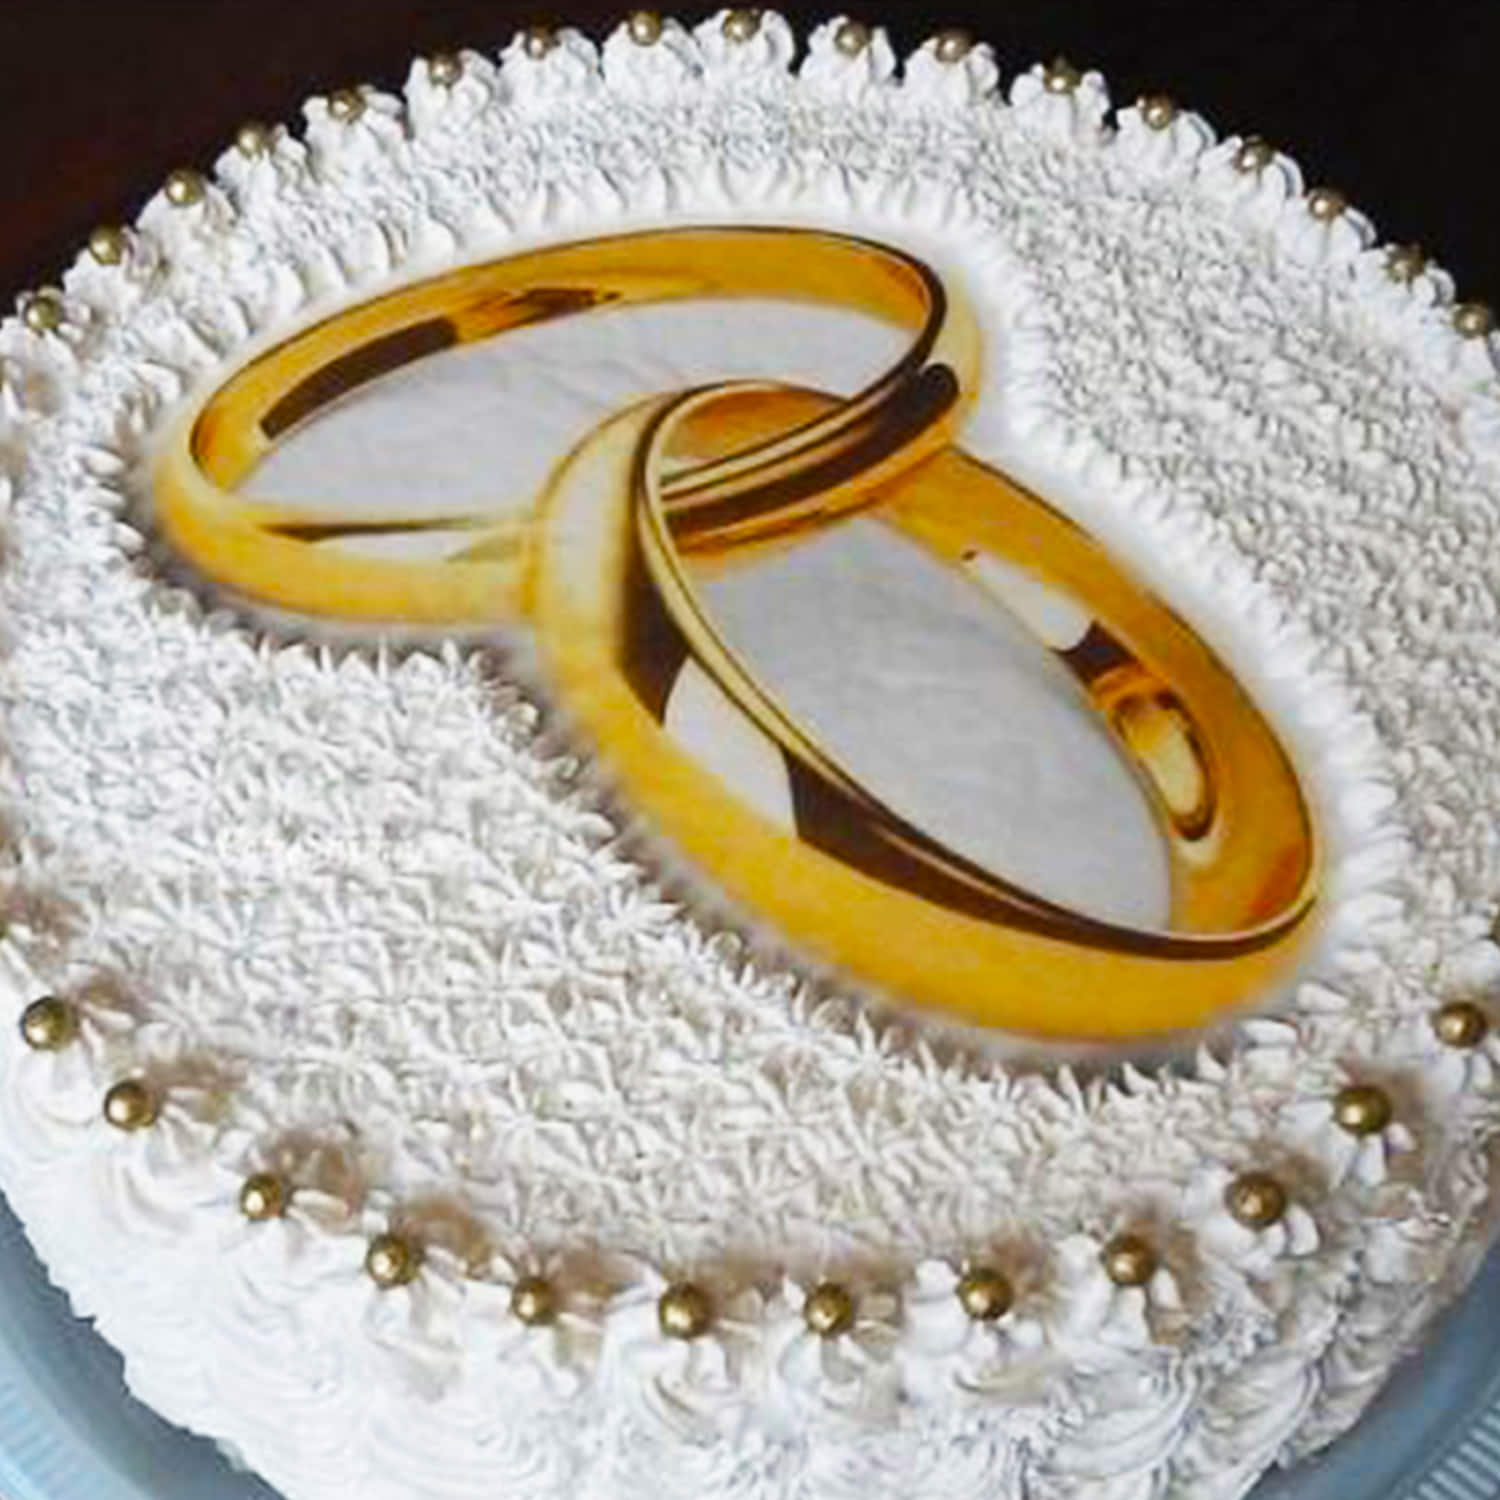 Engagement Cake | Mr & Mrs Engagement Cake With 3D Finishing | Ring 💍 Ceremony  Cake Design - YouTube